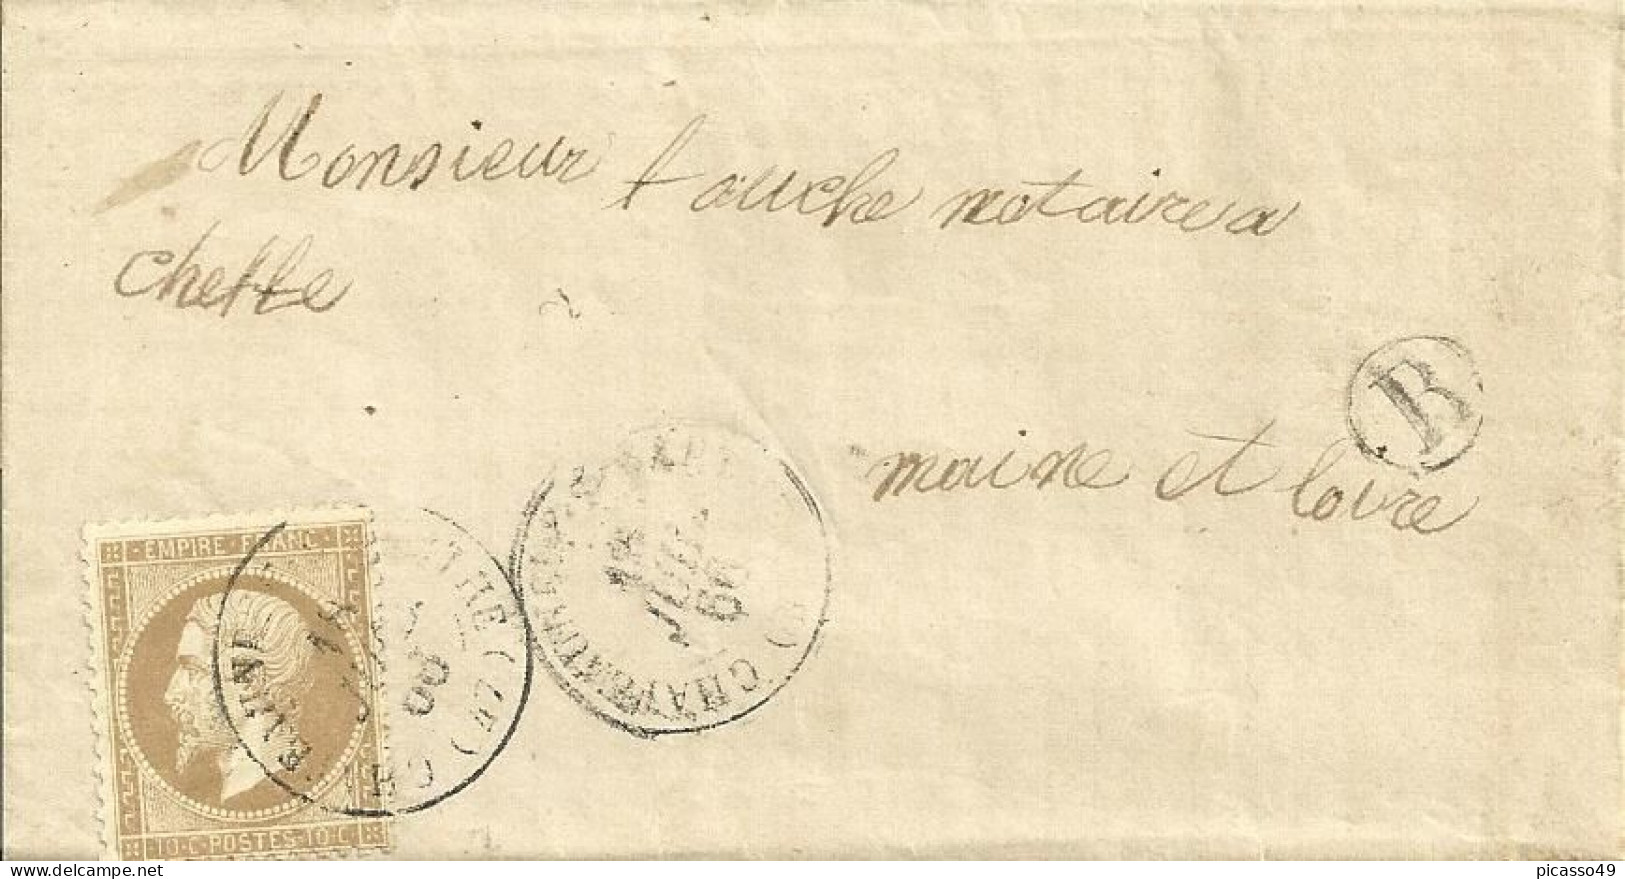 Maine Et Loire , Chateauneuf Sur Sarthe , Cachet T16 , G C 944 Du 18 Juillet 1866 , Boite Rurale B ( Sceaux ) - 1849-1876: Période Classique